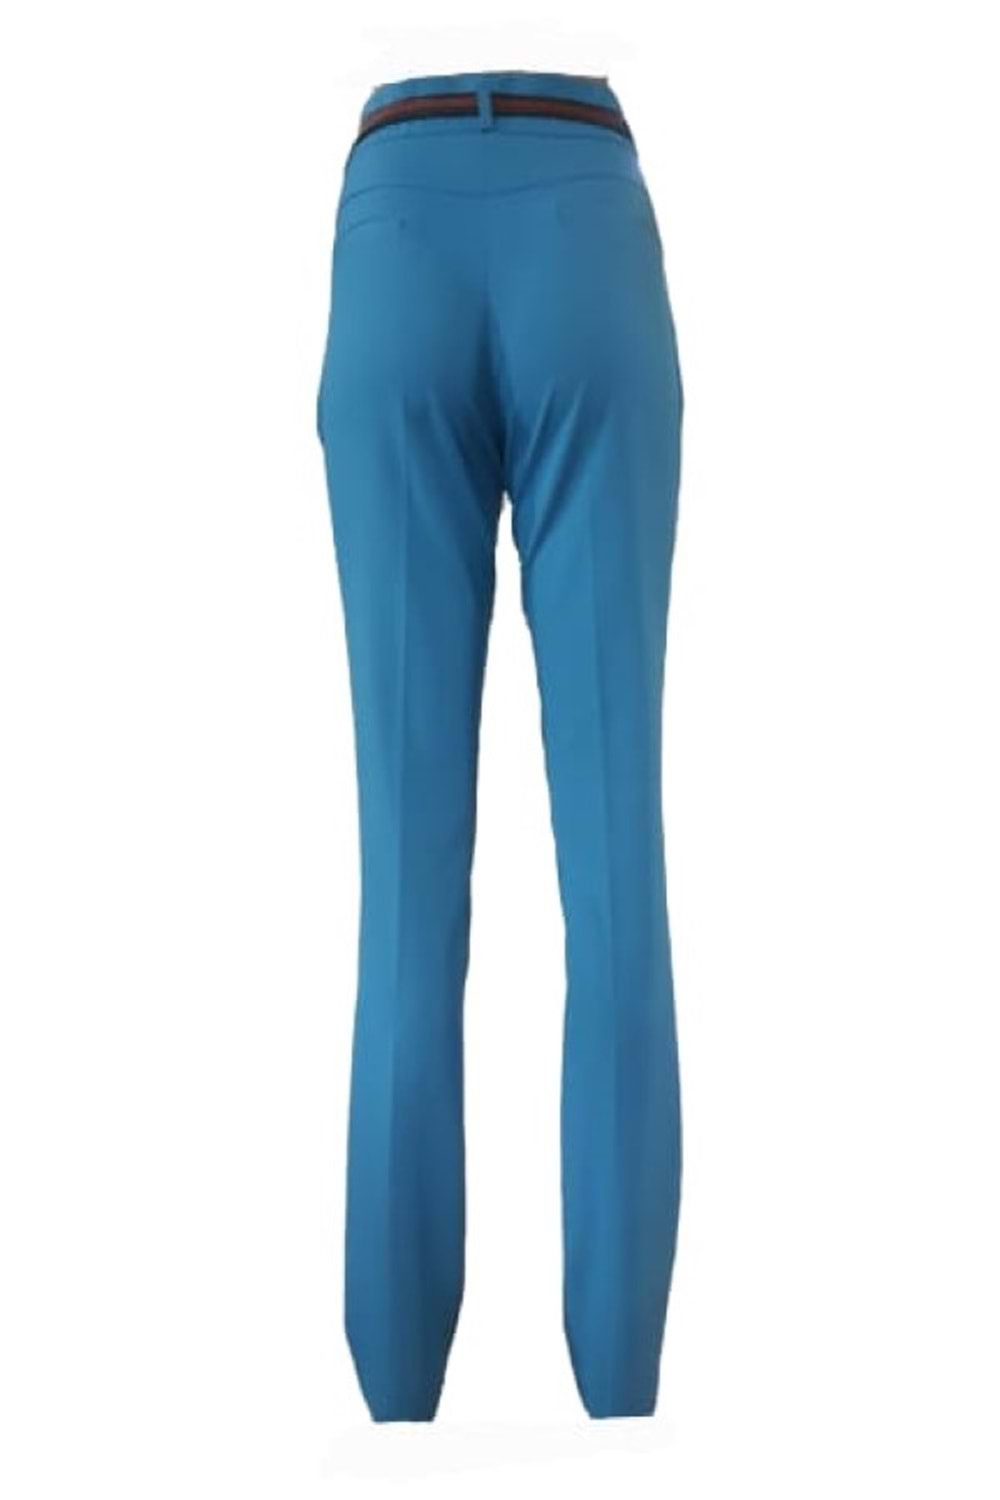 Kübra 3225 Kadın Klasik Mavi Kumaş Pantolon - Mavi - 38